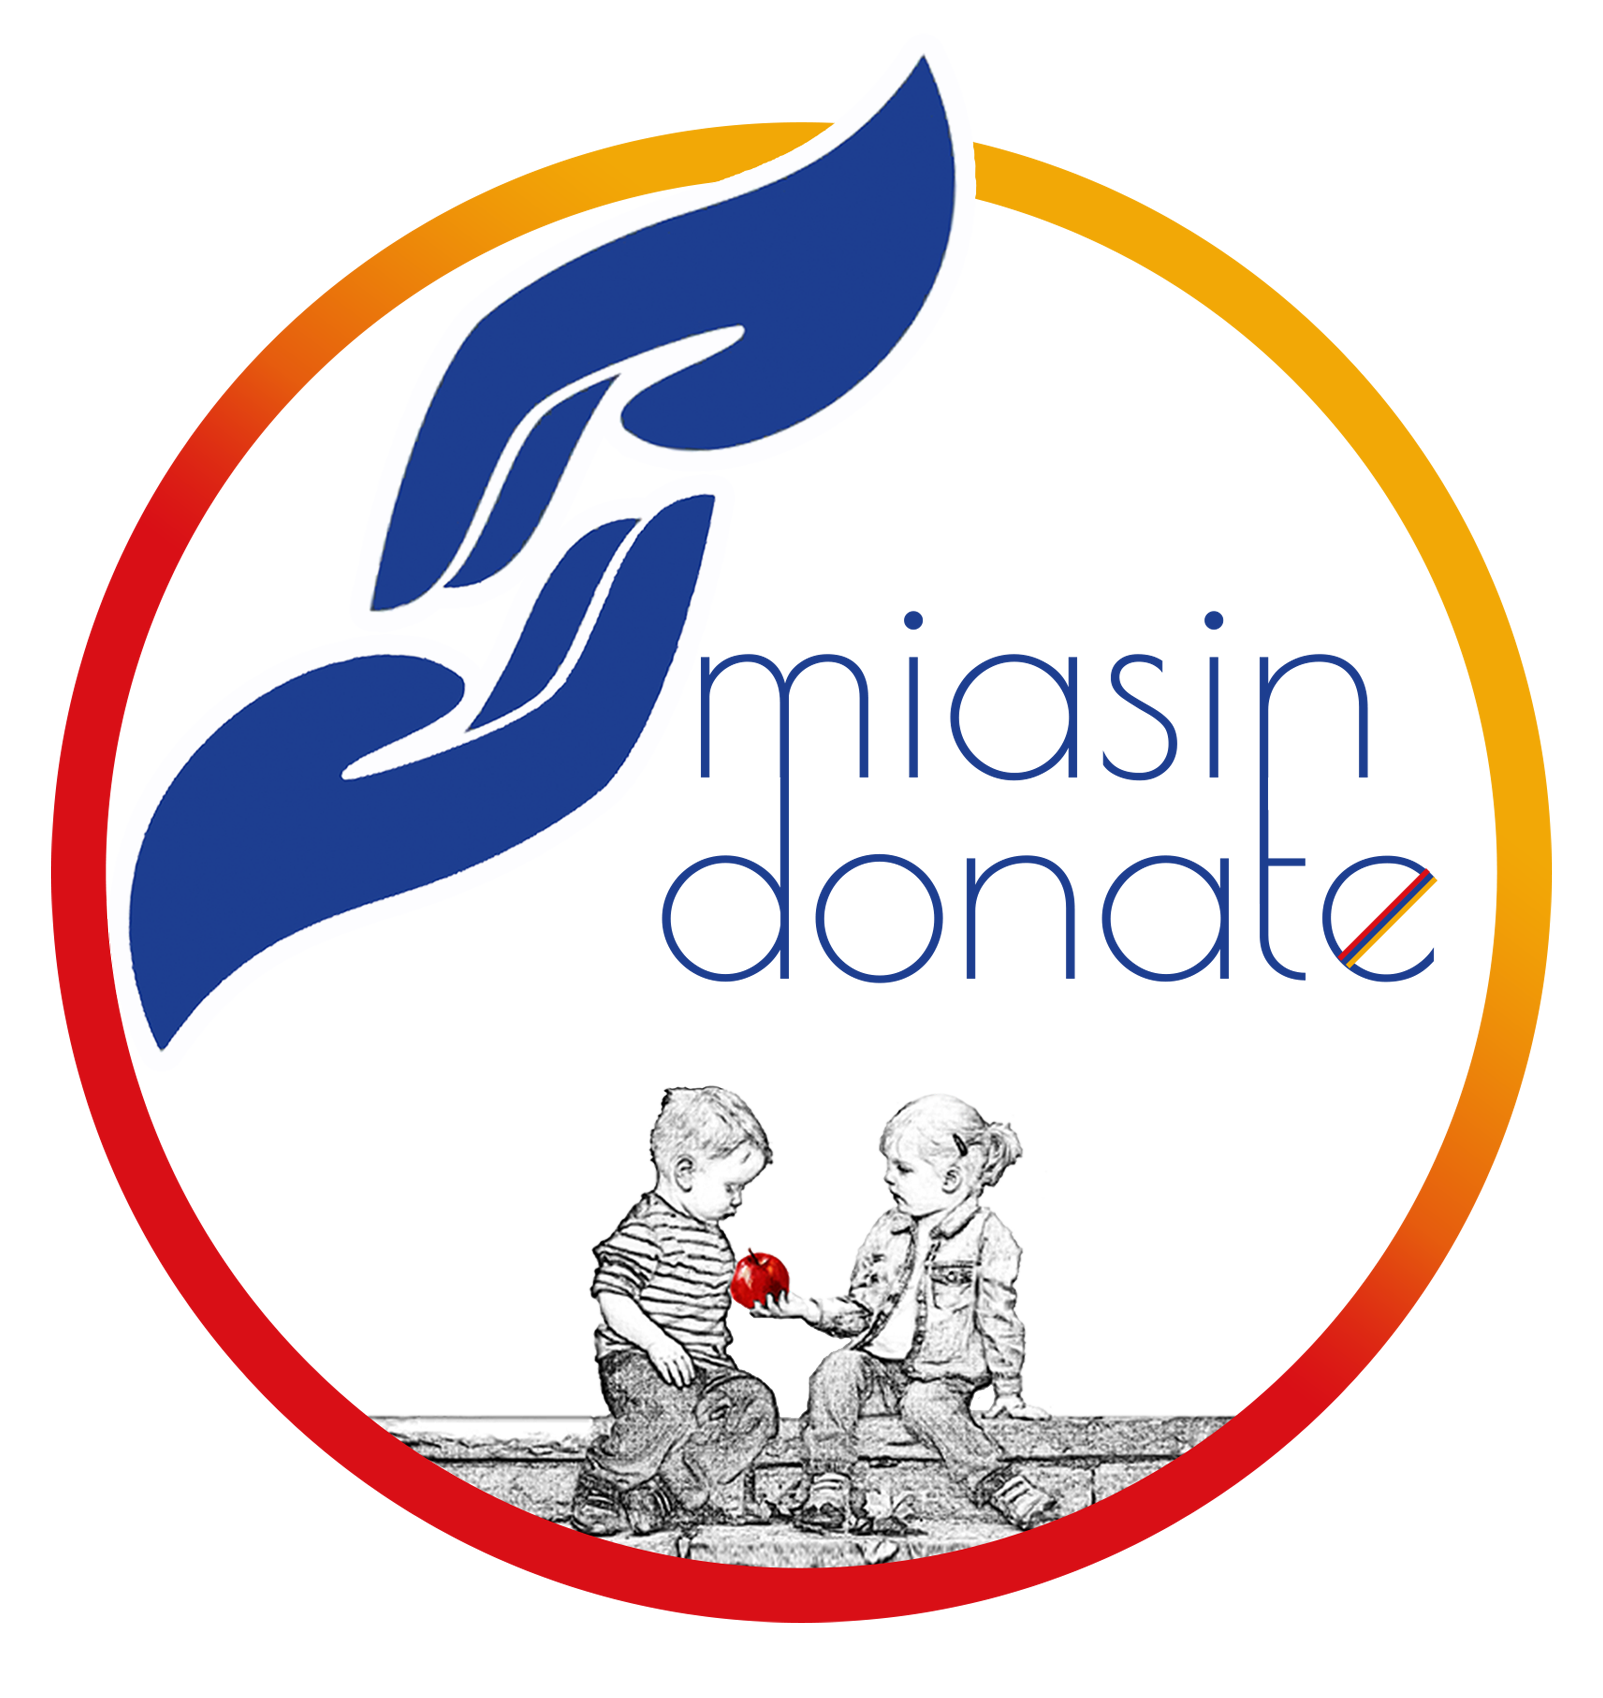 Miasin Donate logo